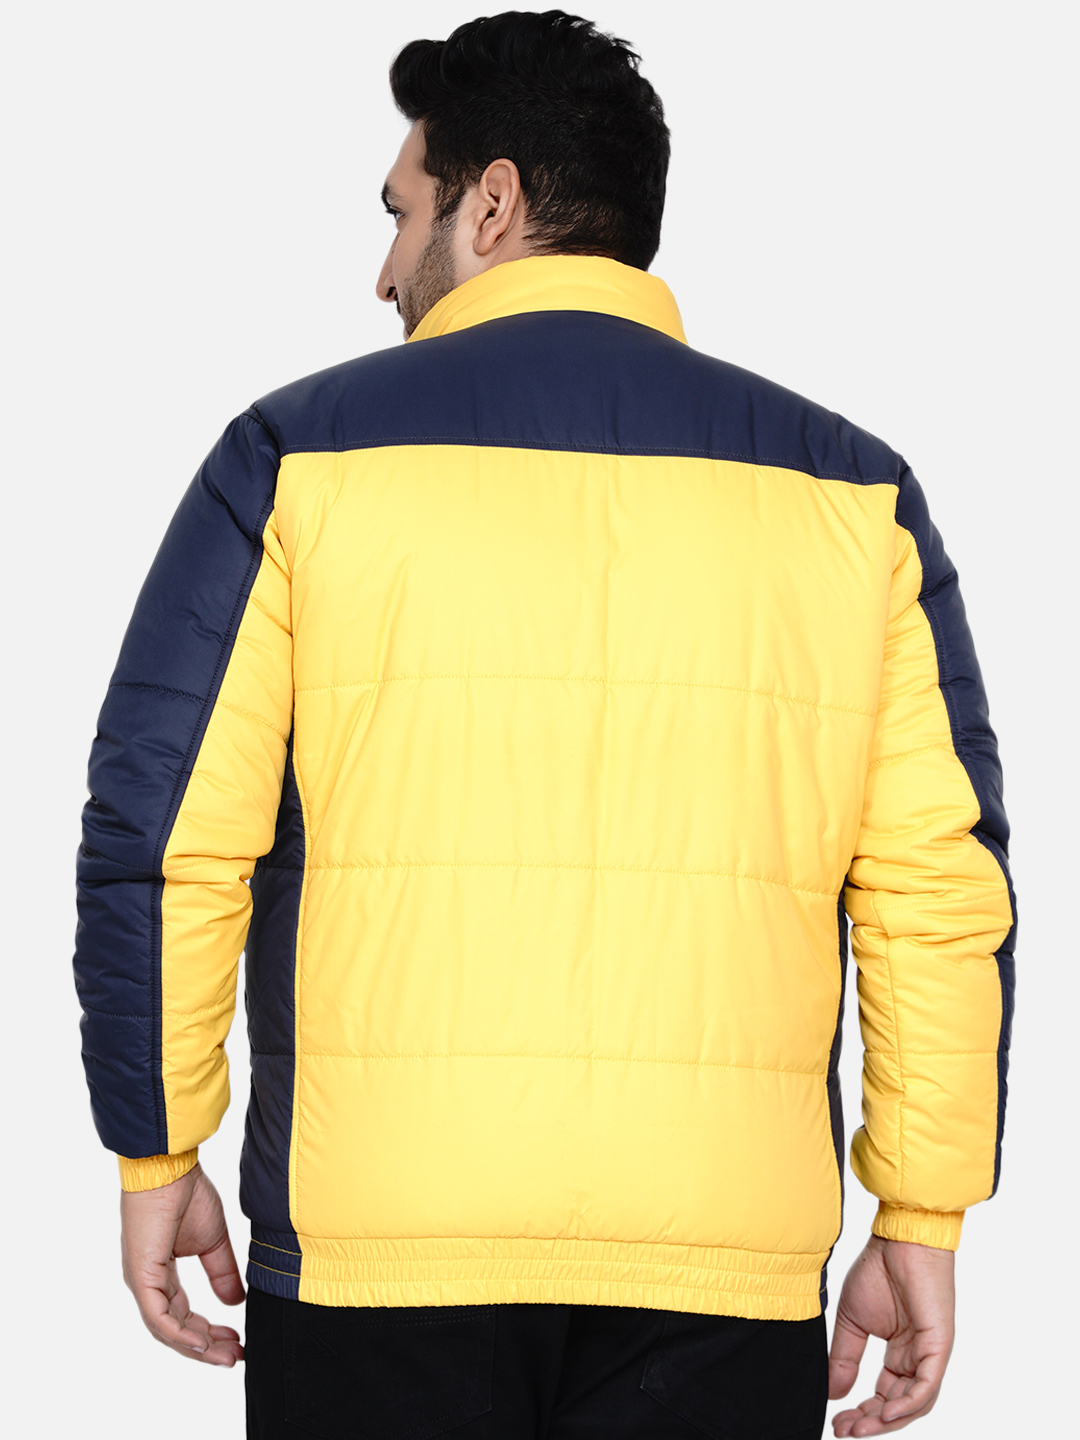 winterwear/jackets/JPJKT73005A/jpjkt73005a-4.jpg